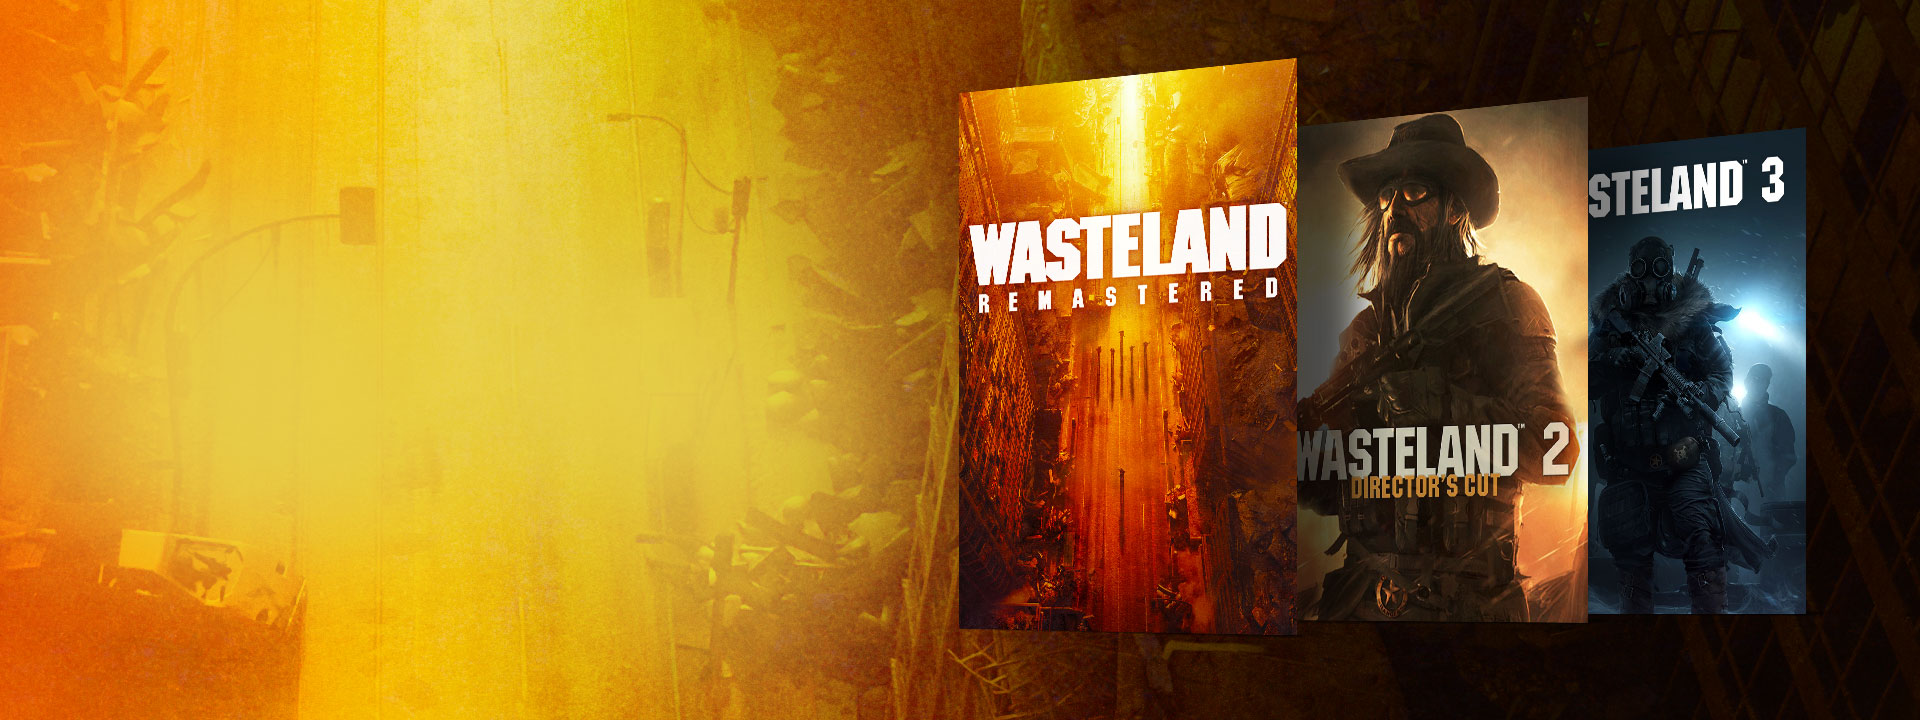 Imágenes de la caja de Wasteland Remastered, Wasteland 2 Director’s Cut y Wasteland 3. Fondo de una calle abandonada con tonos amarillos y naranjas